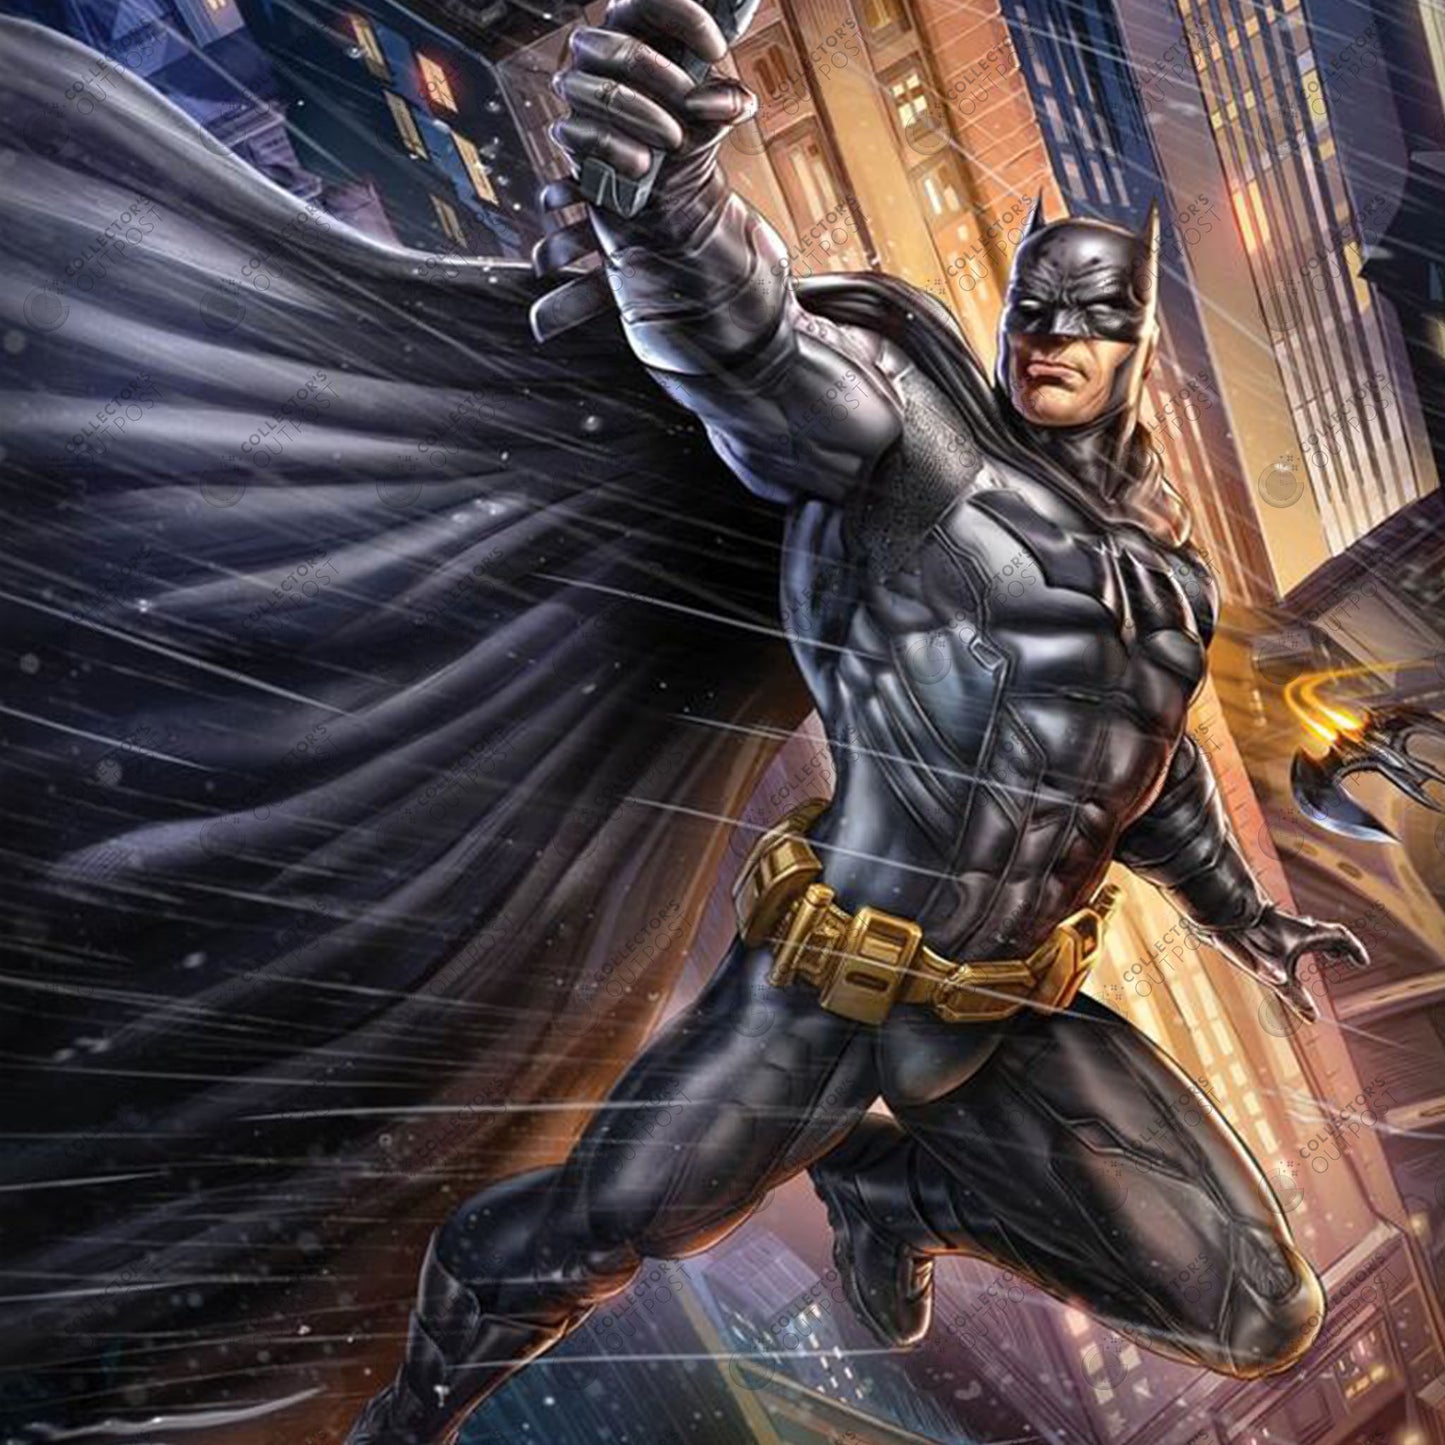 Batman "I Am the Batman" (DC Comics) Premium Art Print by